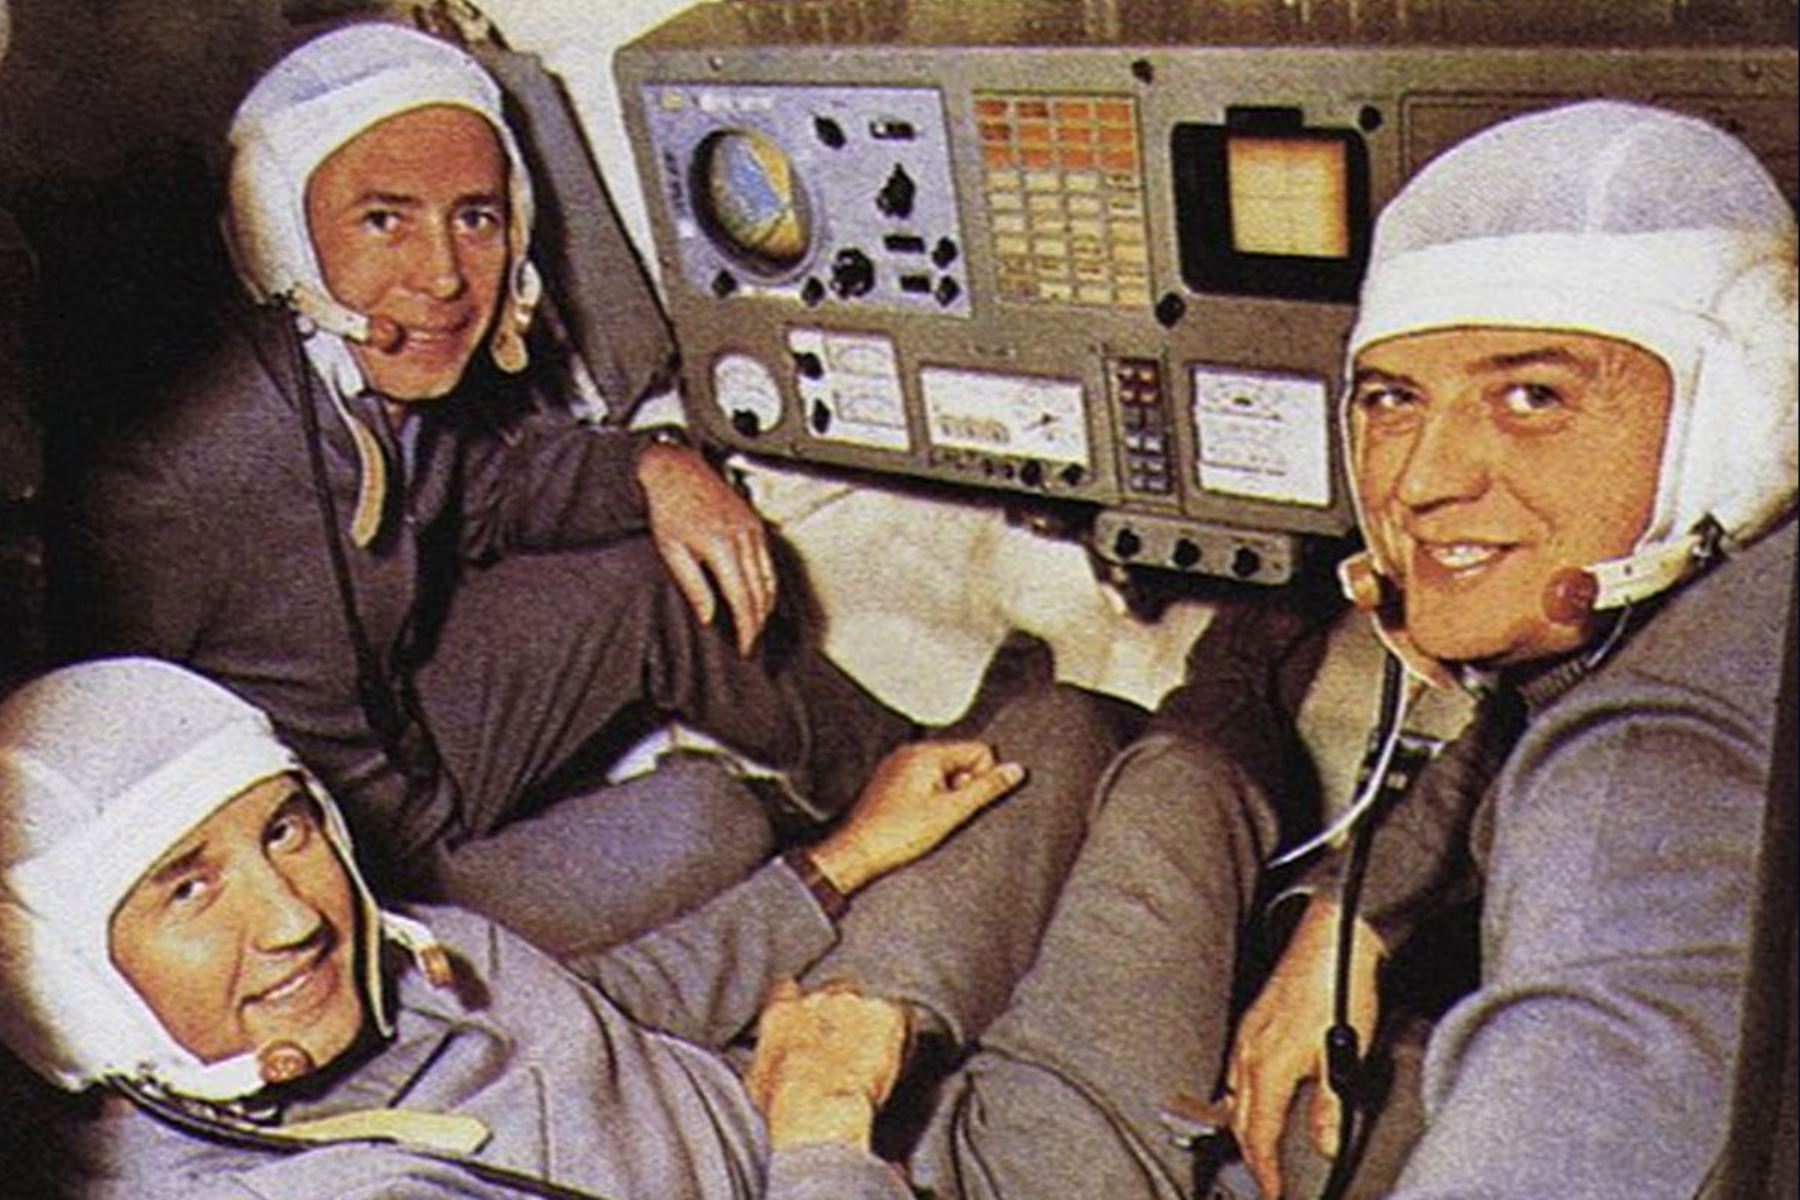 Hace medio siglo, la Soyuz 11 viajó el espacio para consumar una hazaña. Tripulada por los cosmonautas Vladislav Vólkov, Gueorgui Dobrovolski y Viktor Patsáyev, tenía como misión acoplar la nave a la primera estación espacial de la historia, la Salyut 1. Foto: Infobae